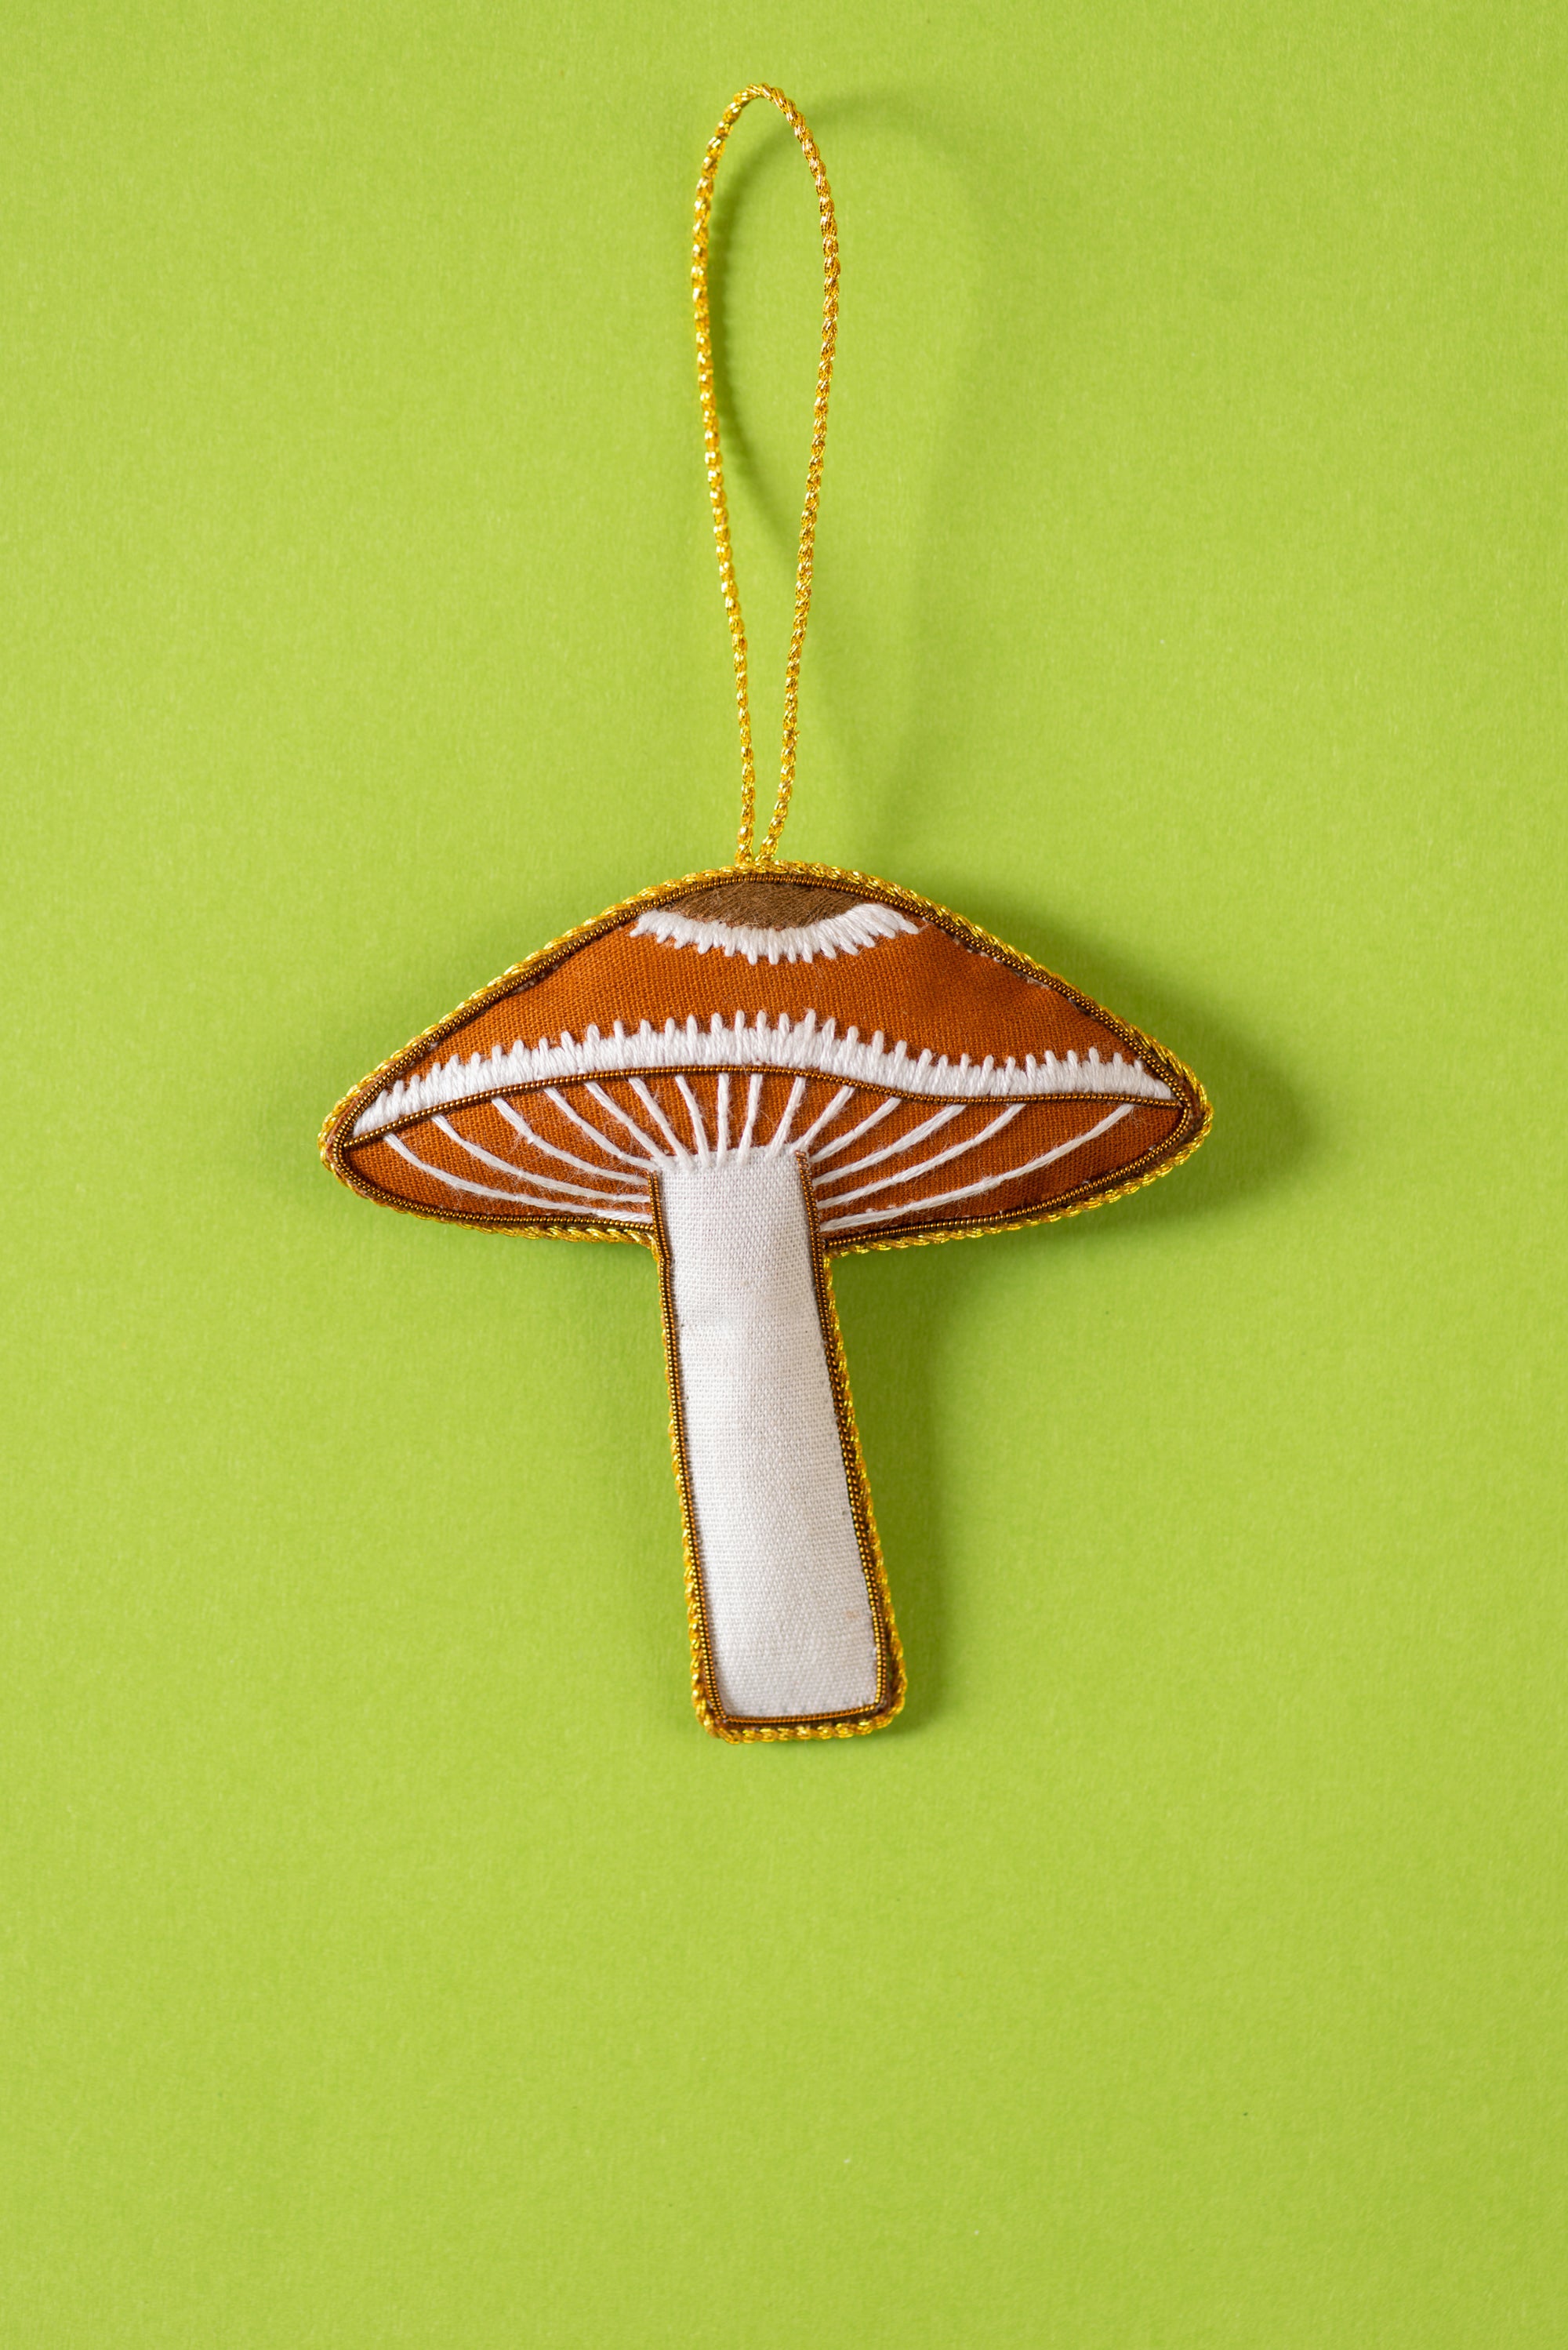 Mushroom Decoration (Virgin Plastic Free)